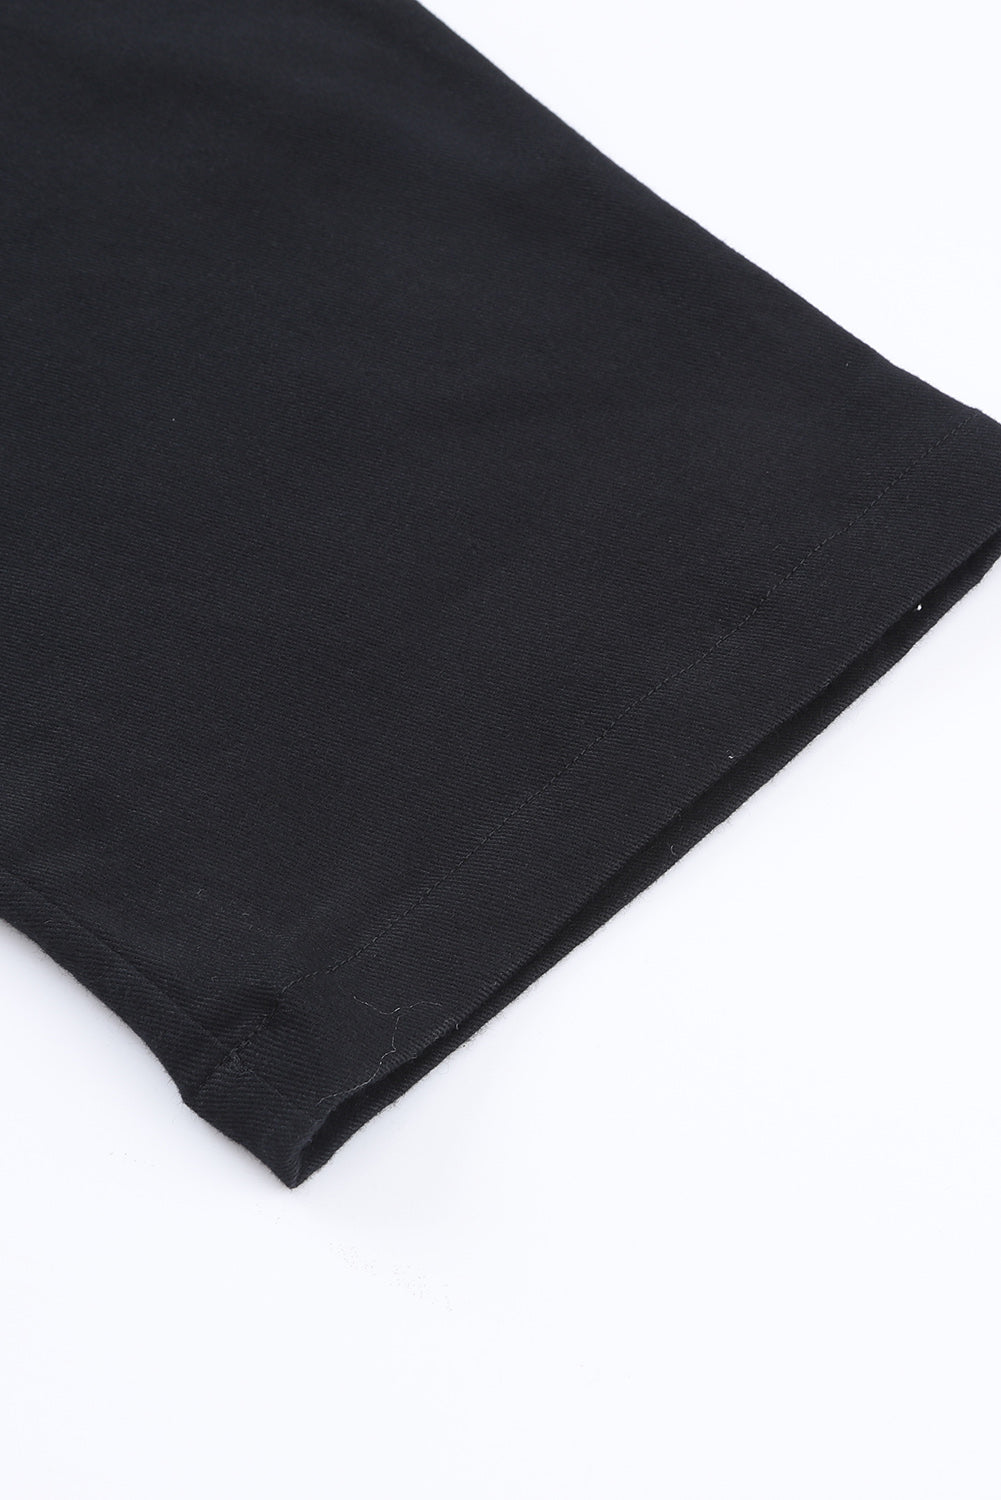 Črn skrajšan kombinezon z žepi in naramnicami